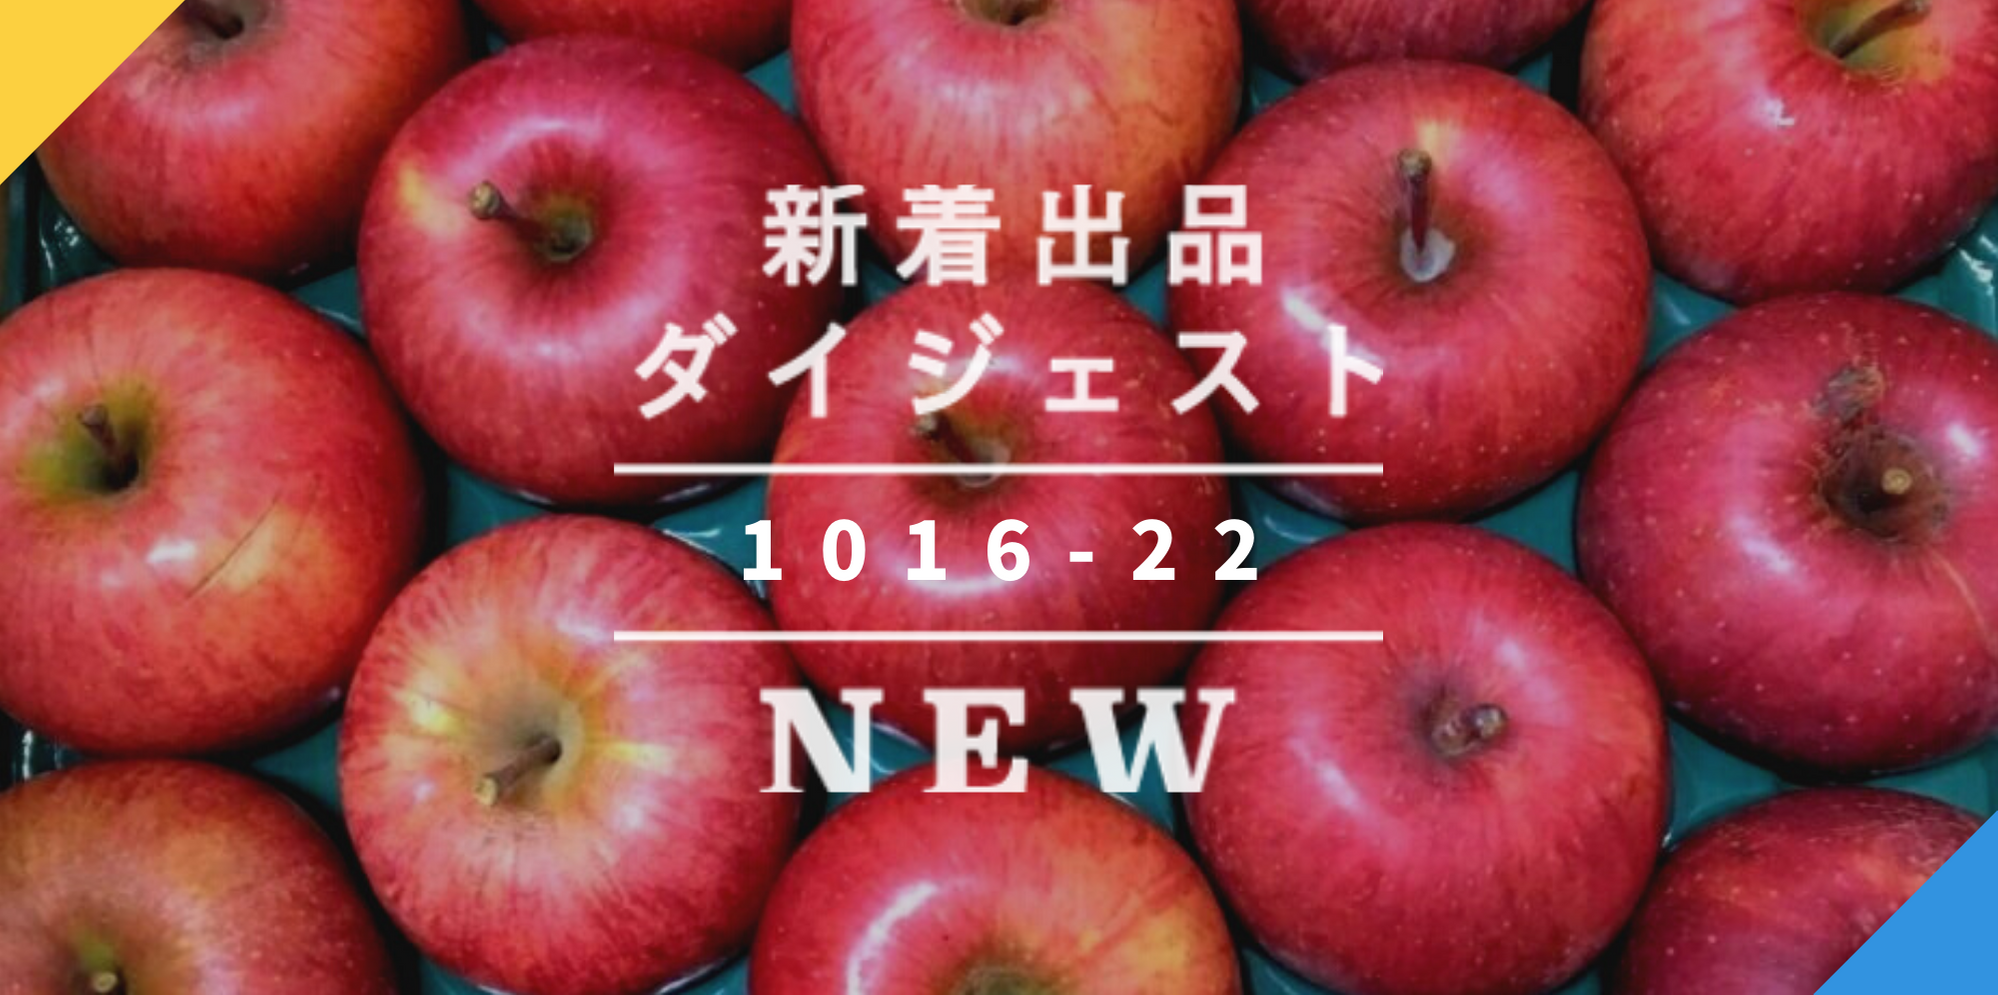 バックナンバー]りんごの旬が真っ盛りです????今週のおすすめ新着出品[2020年10月23日編] | 農家漁師から産地直送の通販